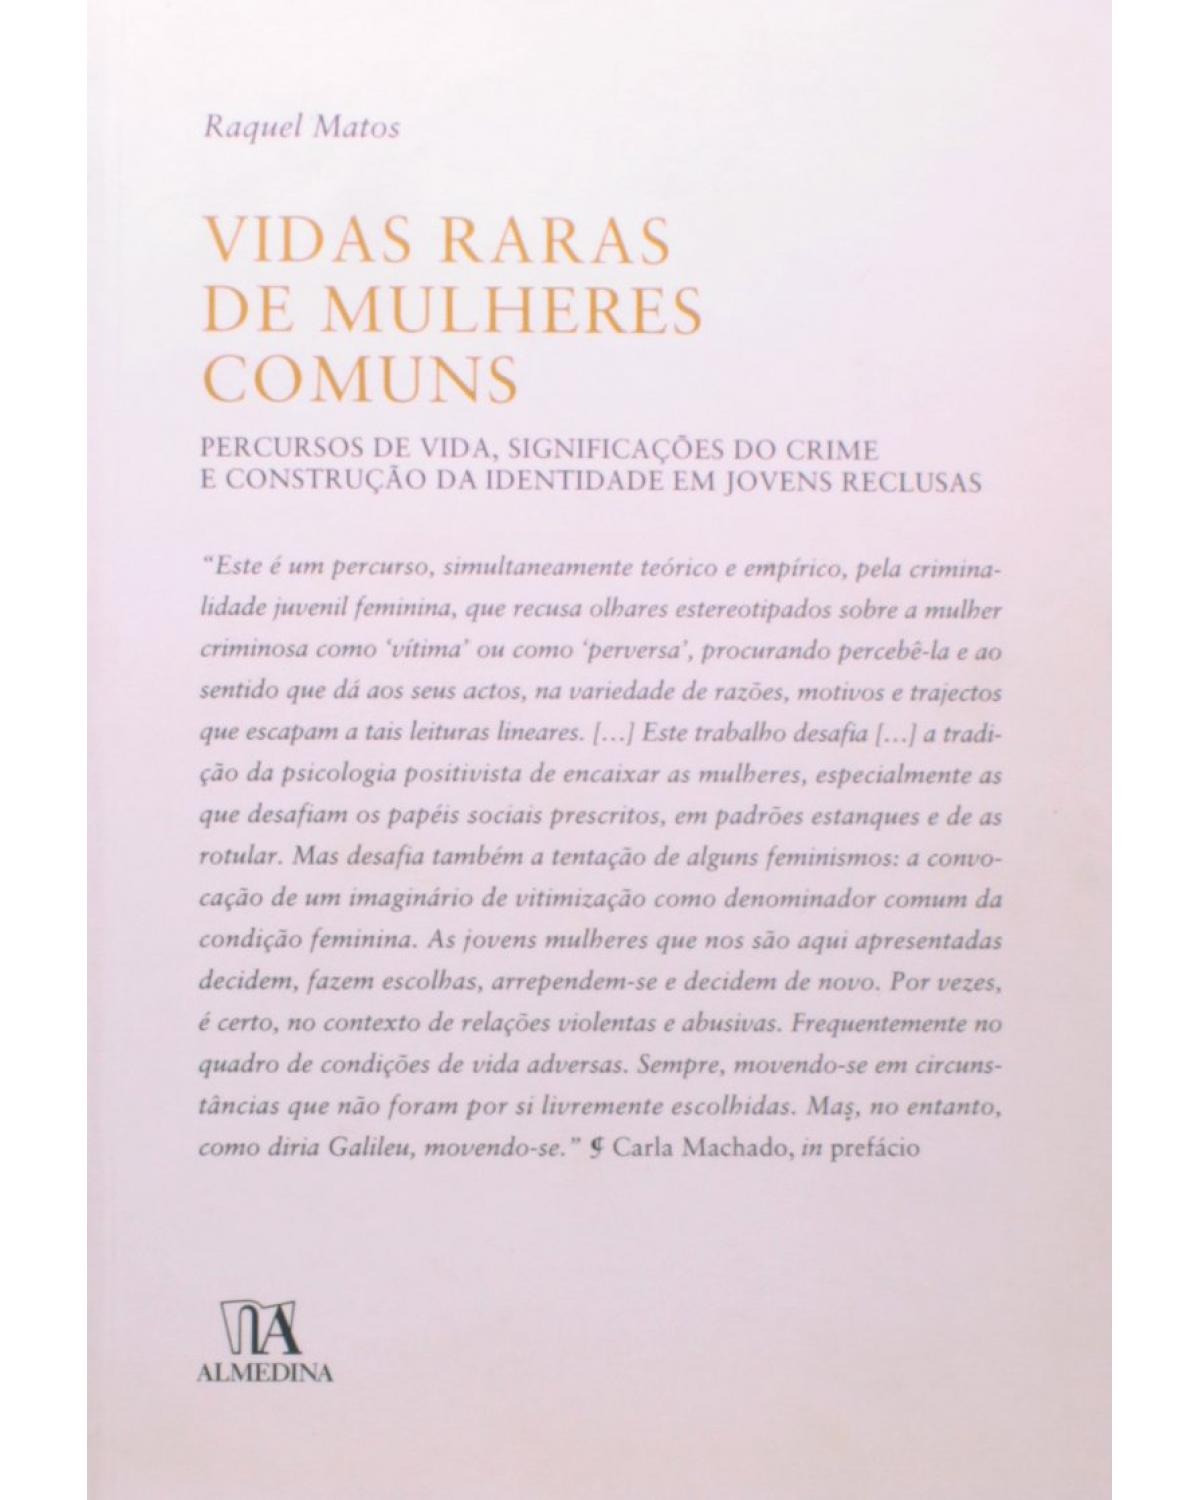 Vidas raras de mulheres comuns: Percursos de vida, significações do crime e construção da identidade em jovens reclusas - 1ª Edição | 2008